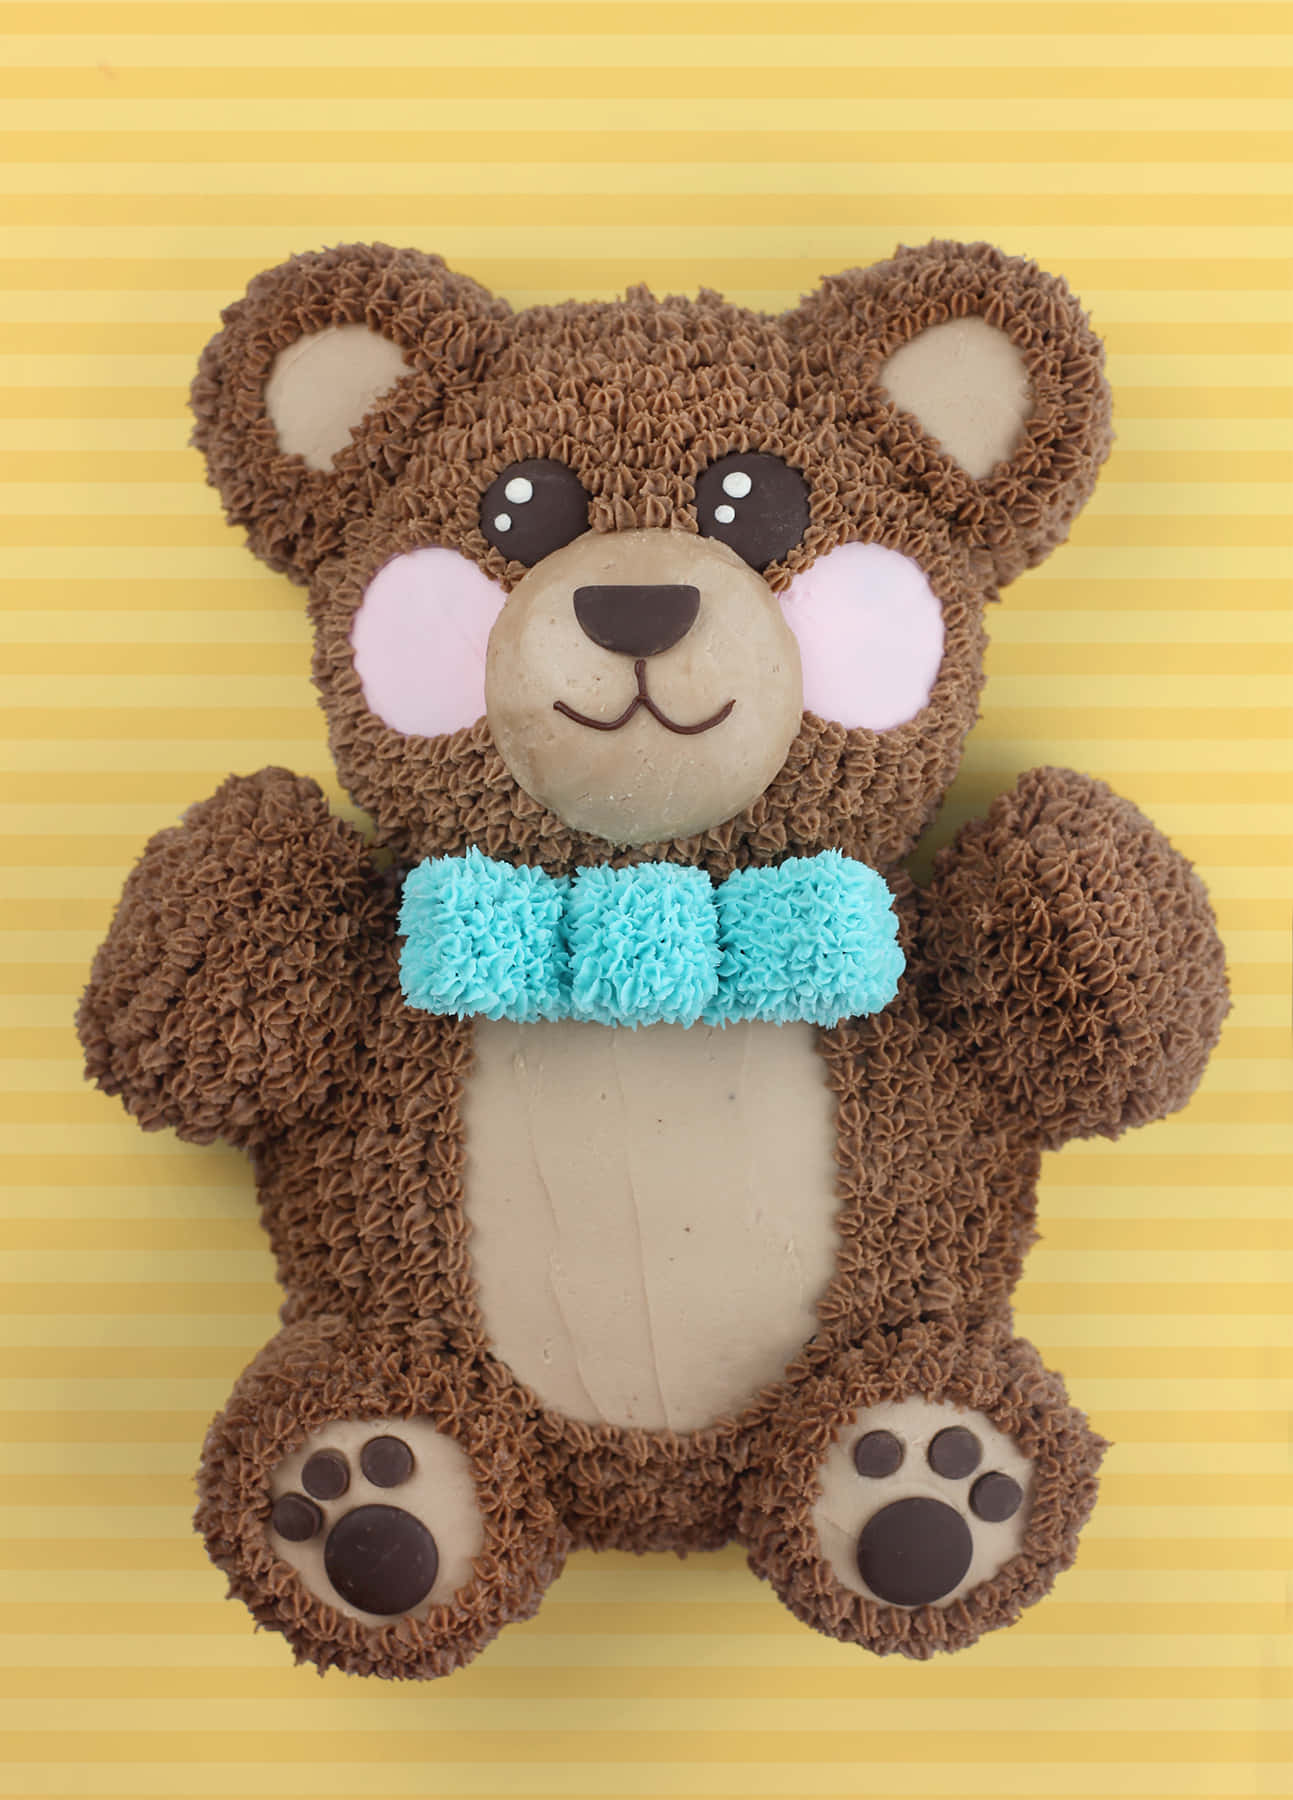 Cuddling with a Soft and Squishy Teddy Bear